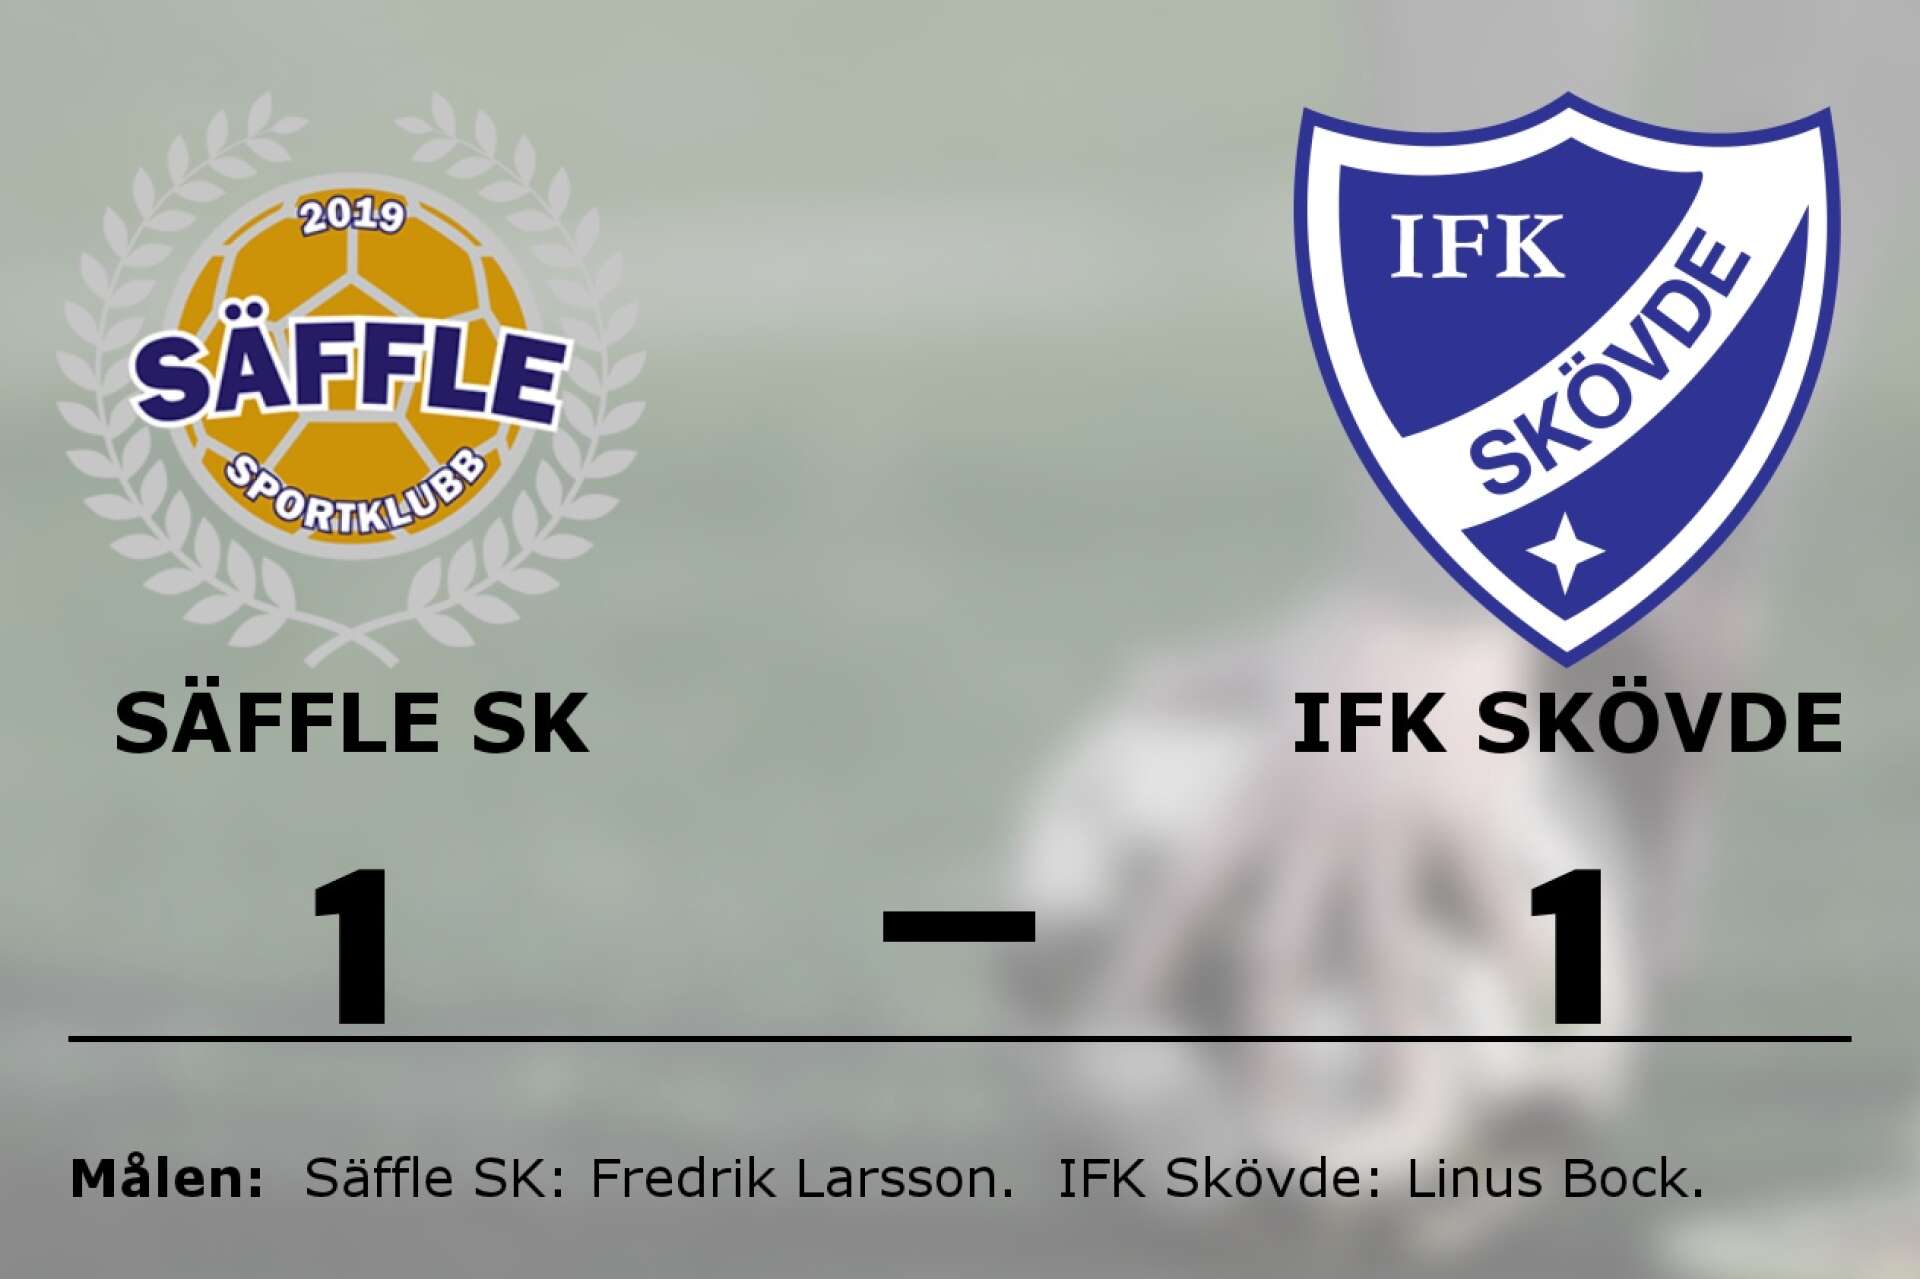 Säffle SK spelade lika mot IFK Skövde fotboll